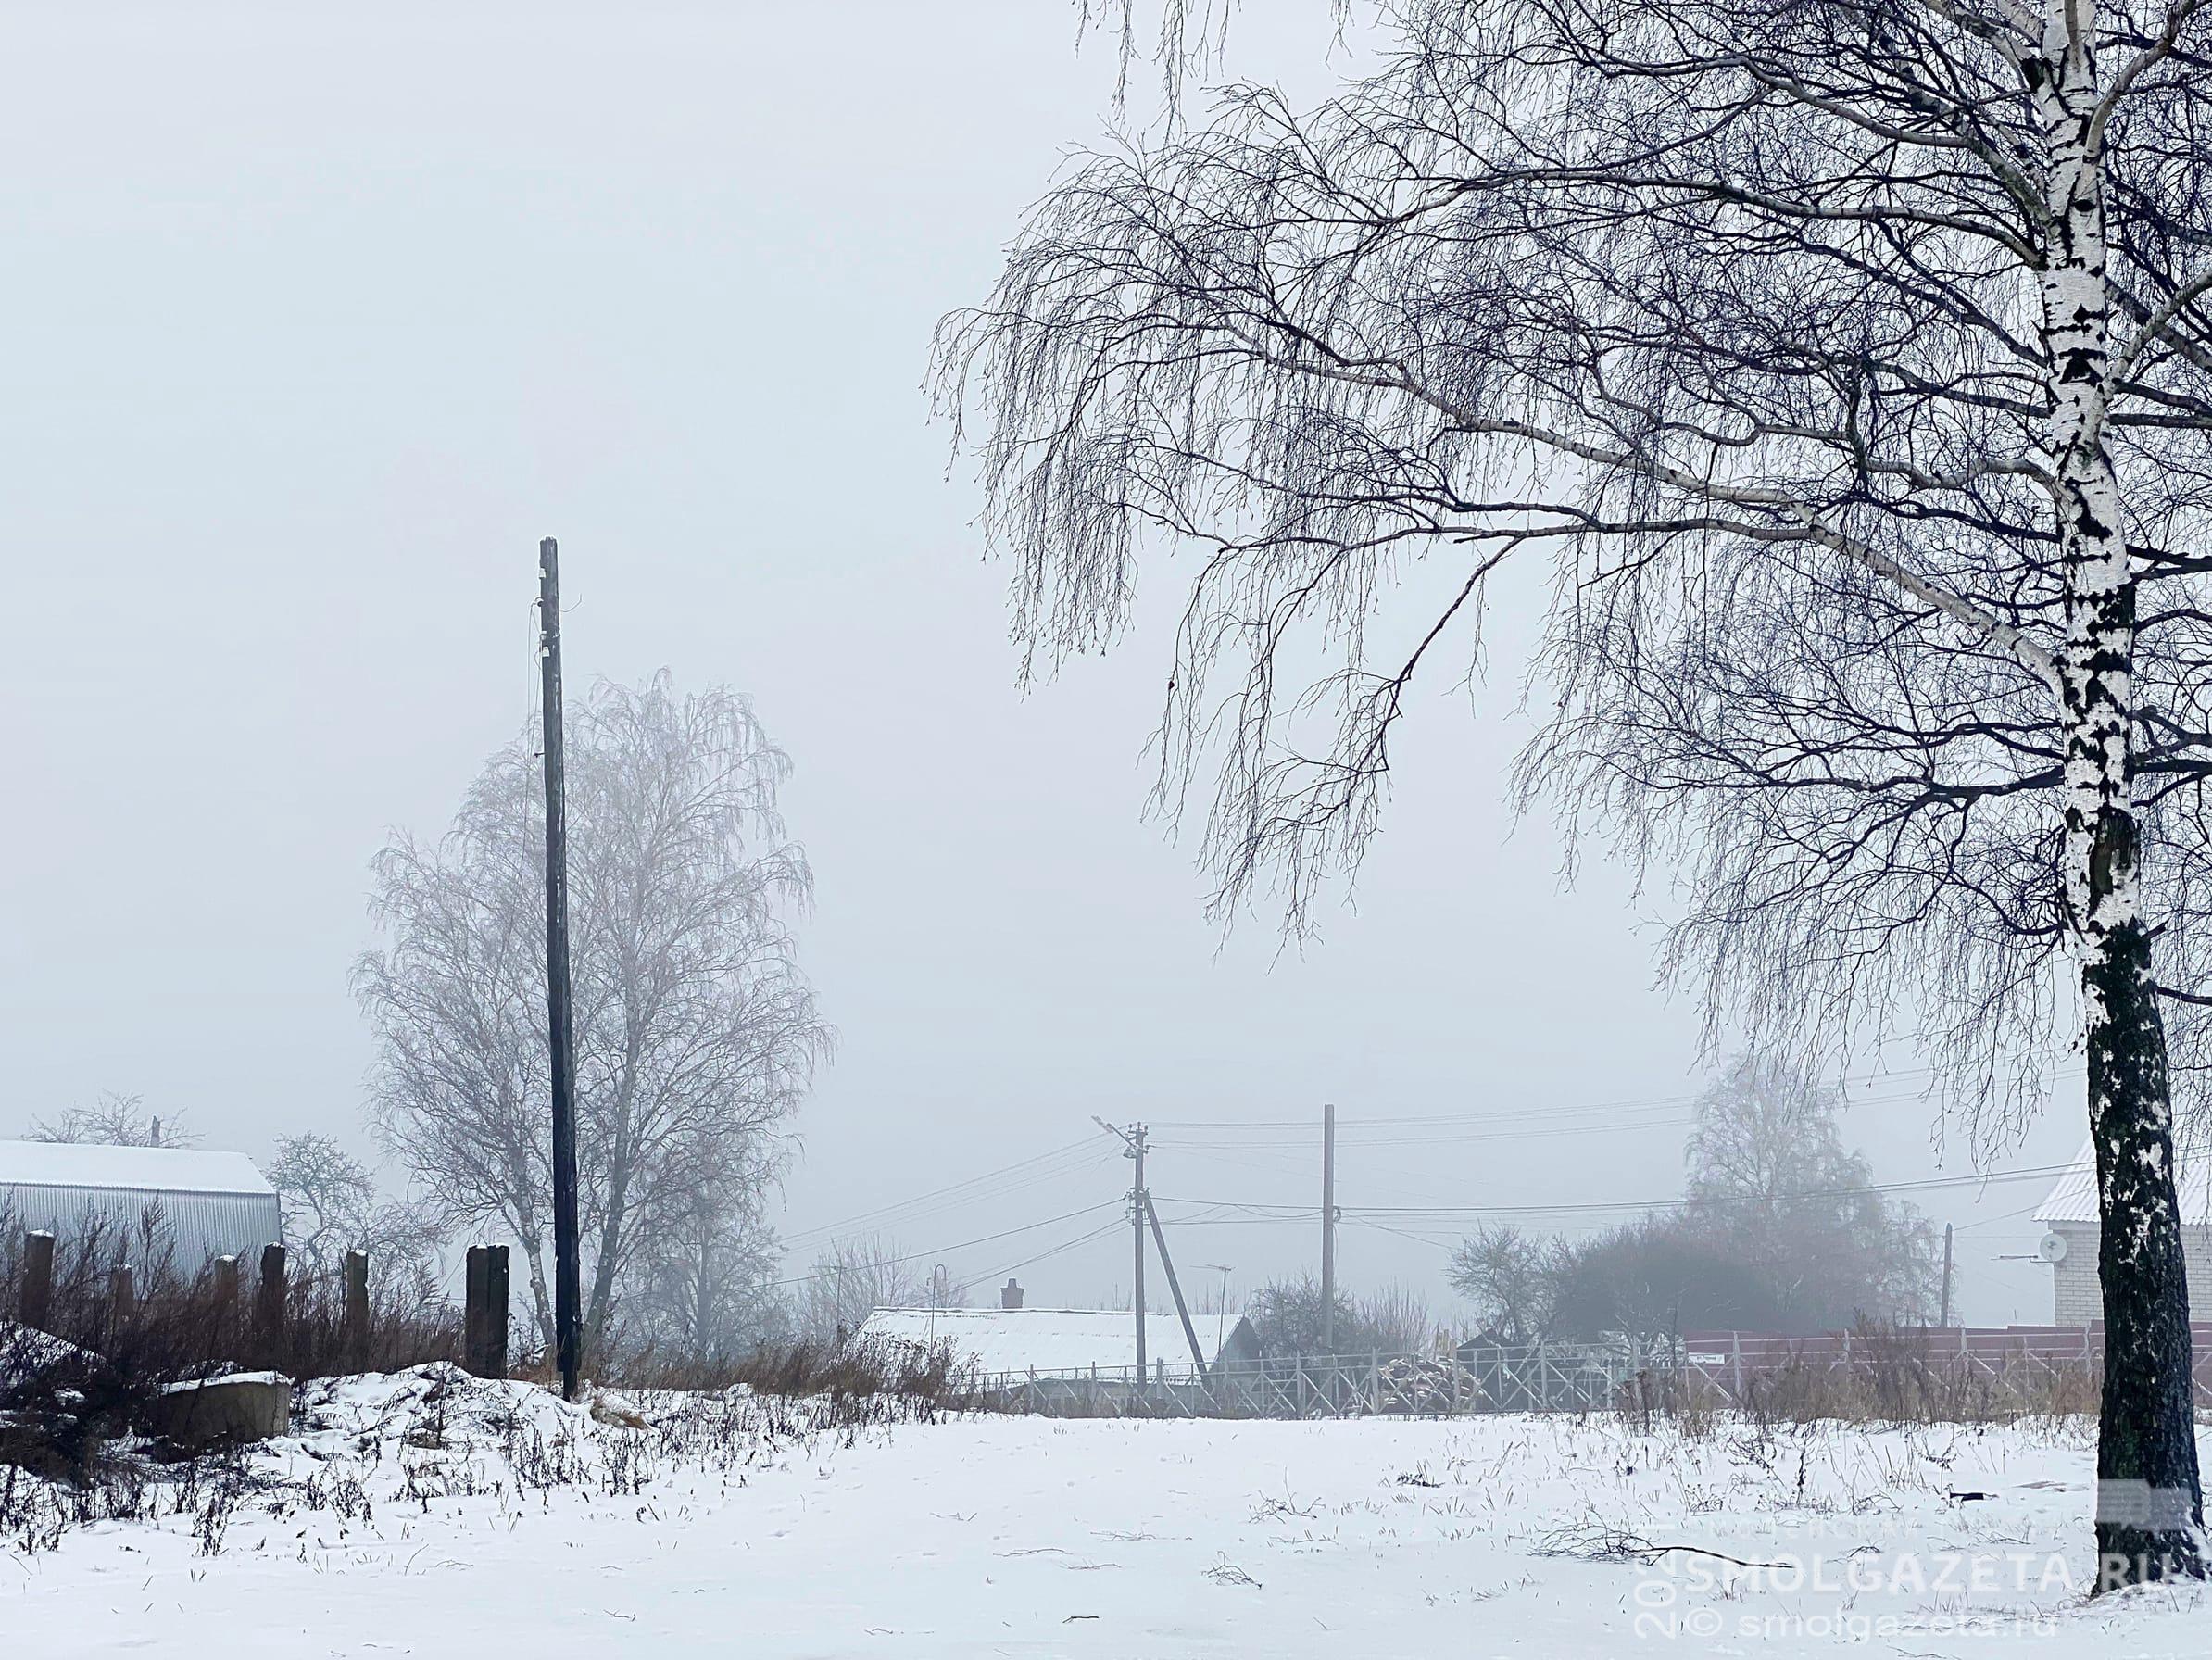 Мокрый снег и гололедица ожидаются в Смоленской области 28 января